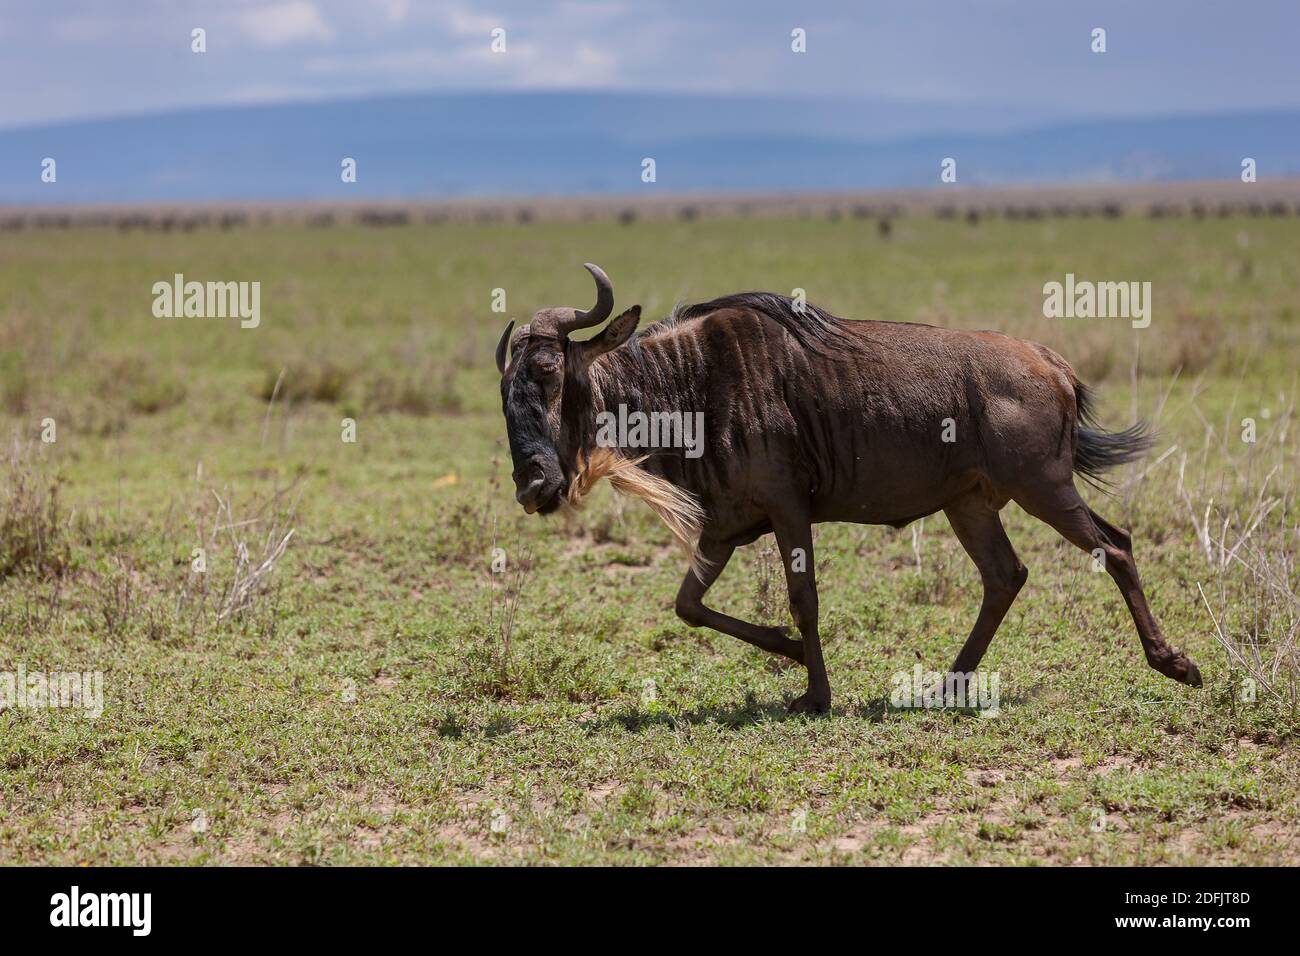 Blue Wildebeest también conocido como wildebeest con barba blanca o gnu con brindled corriendo a través de la sabana interminable del Parque Nacional Serengeti, Tanzania, África Foto de stock